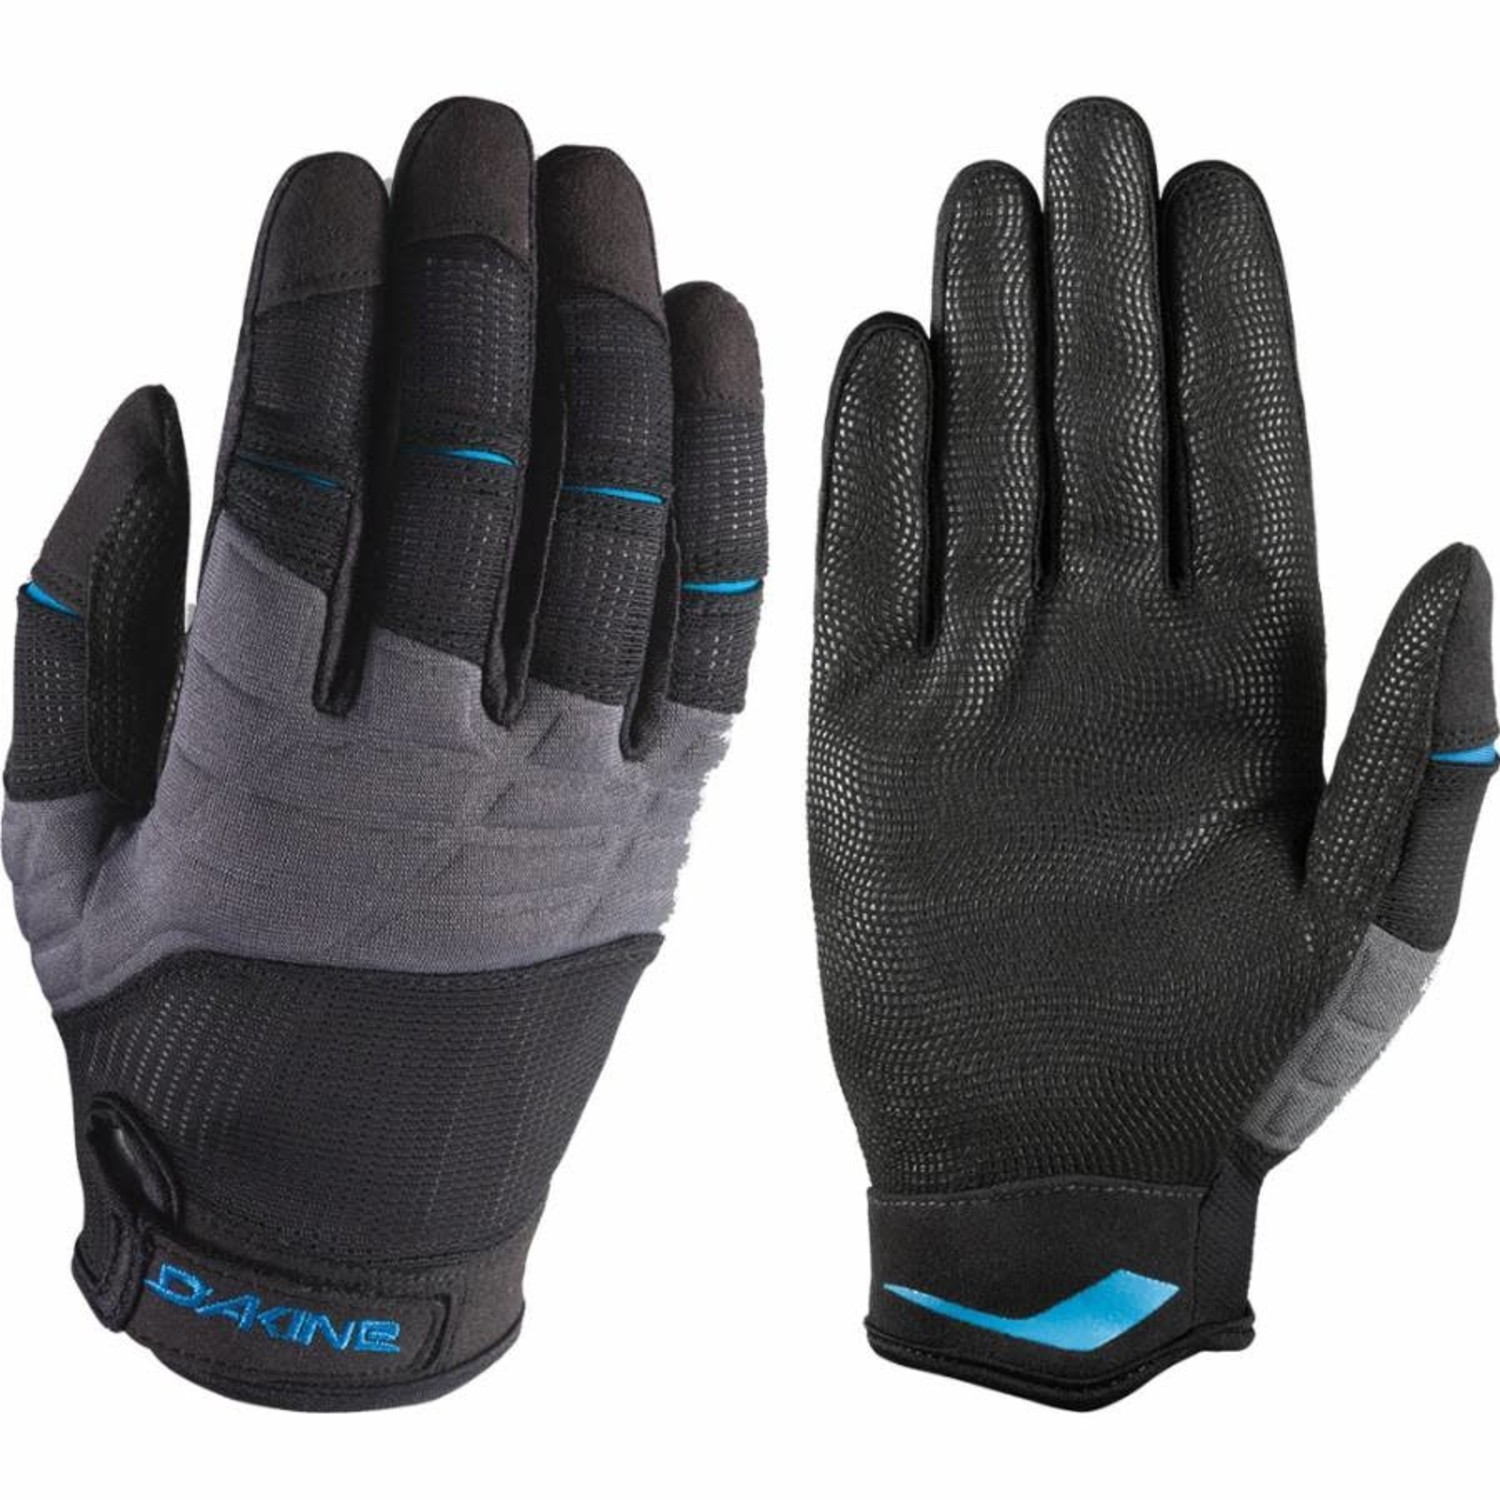 https://cdn.shoplightspeed.com/shops/629247/files/44043207/1500x4000x3/dakine-dakine-full-finger-sailing-gloves-black.jpg